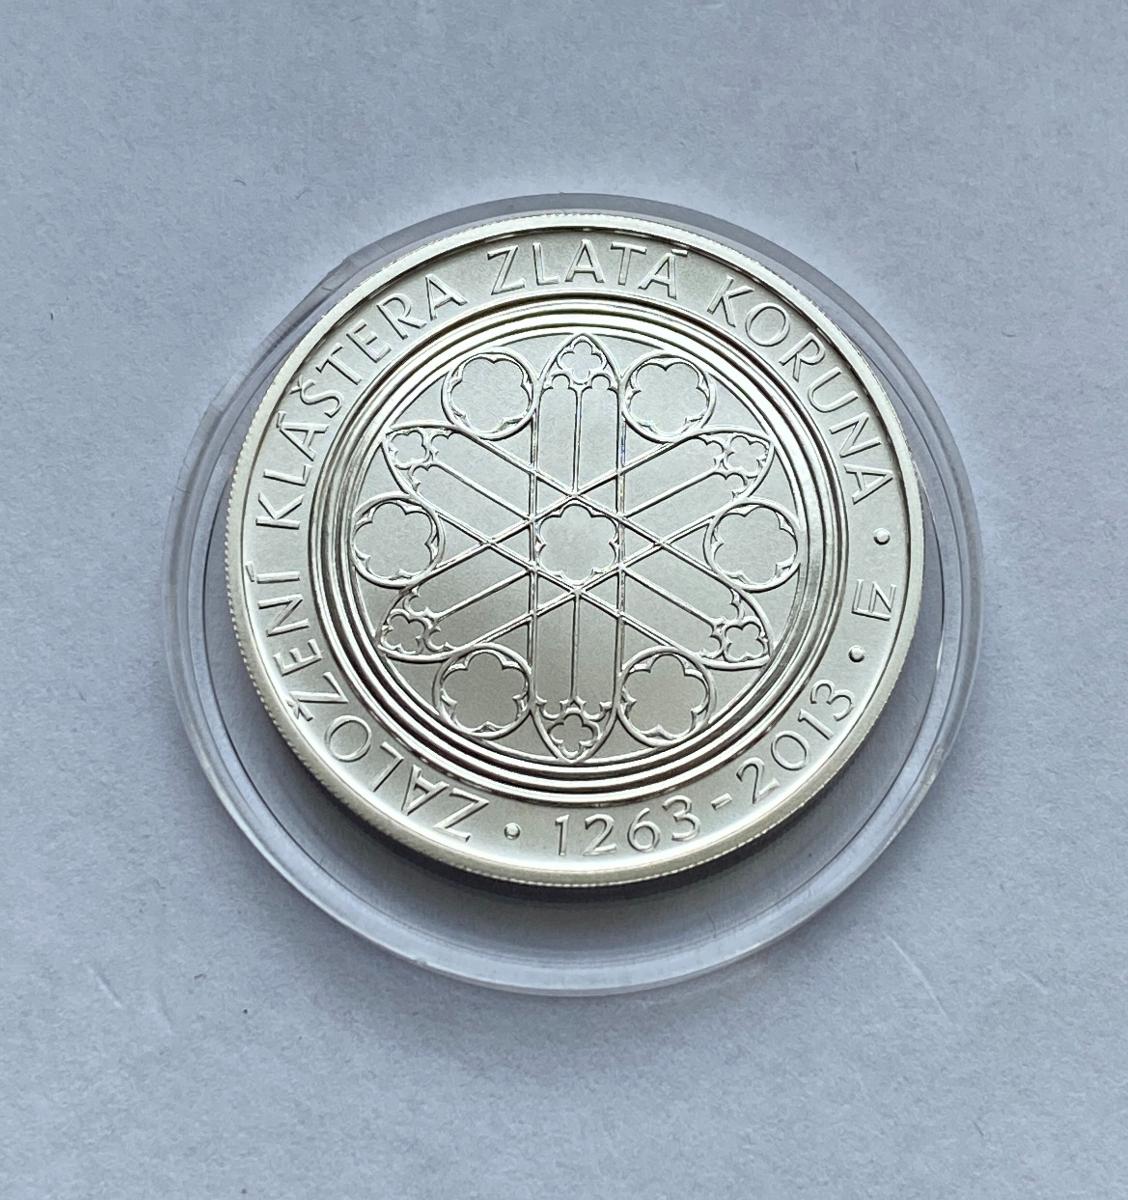 Strieborná minca 8,00 € Založenie kláštoru Zlatá koruna - S 240306/24 - Numizmatika